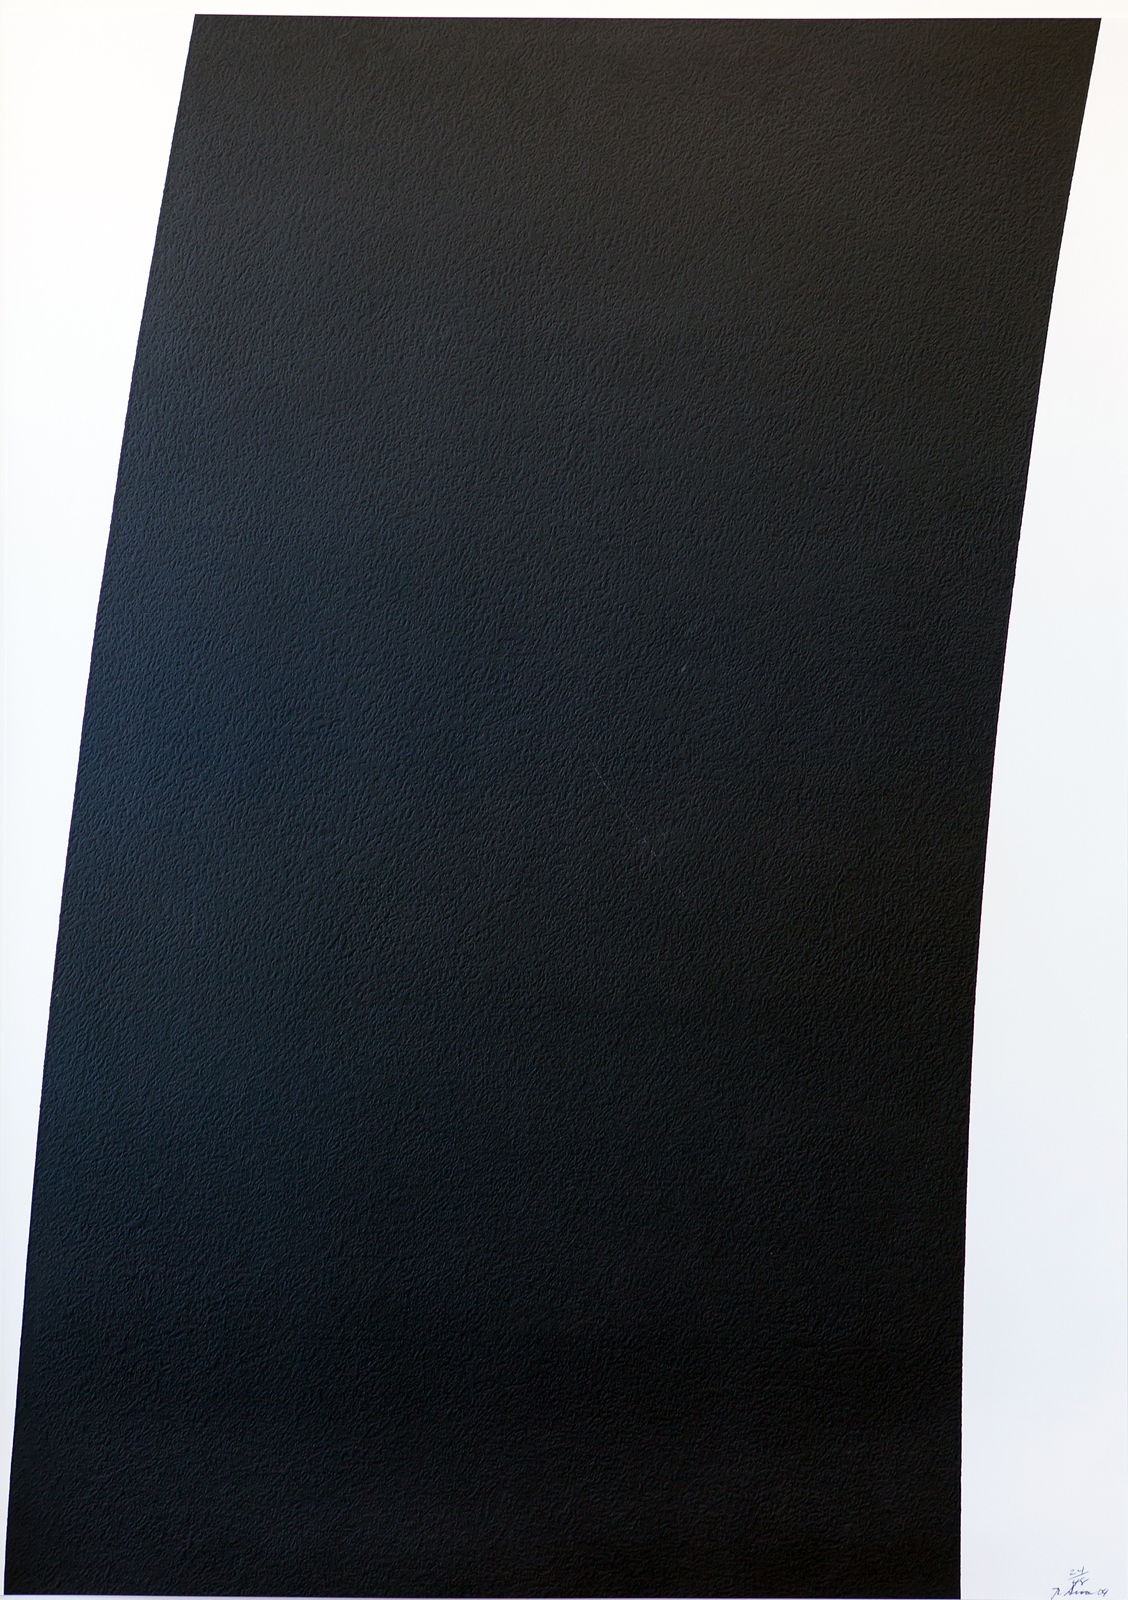 Distributie Eervol studio Richard Serra — FS | Forman collection